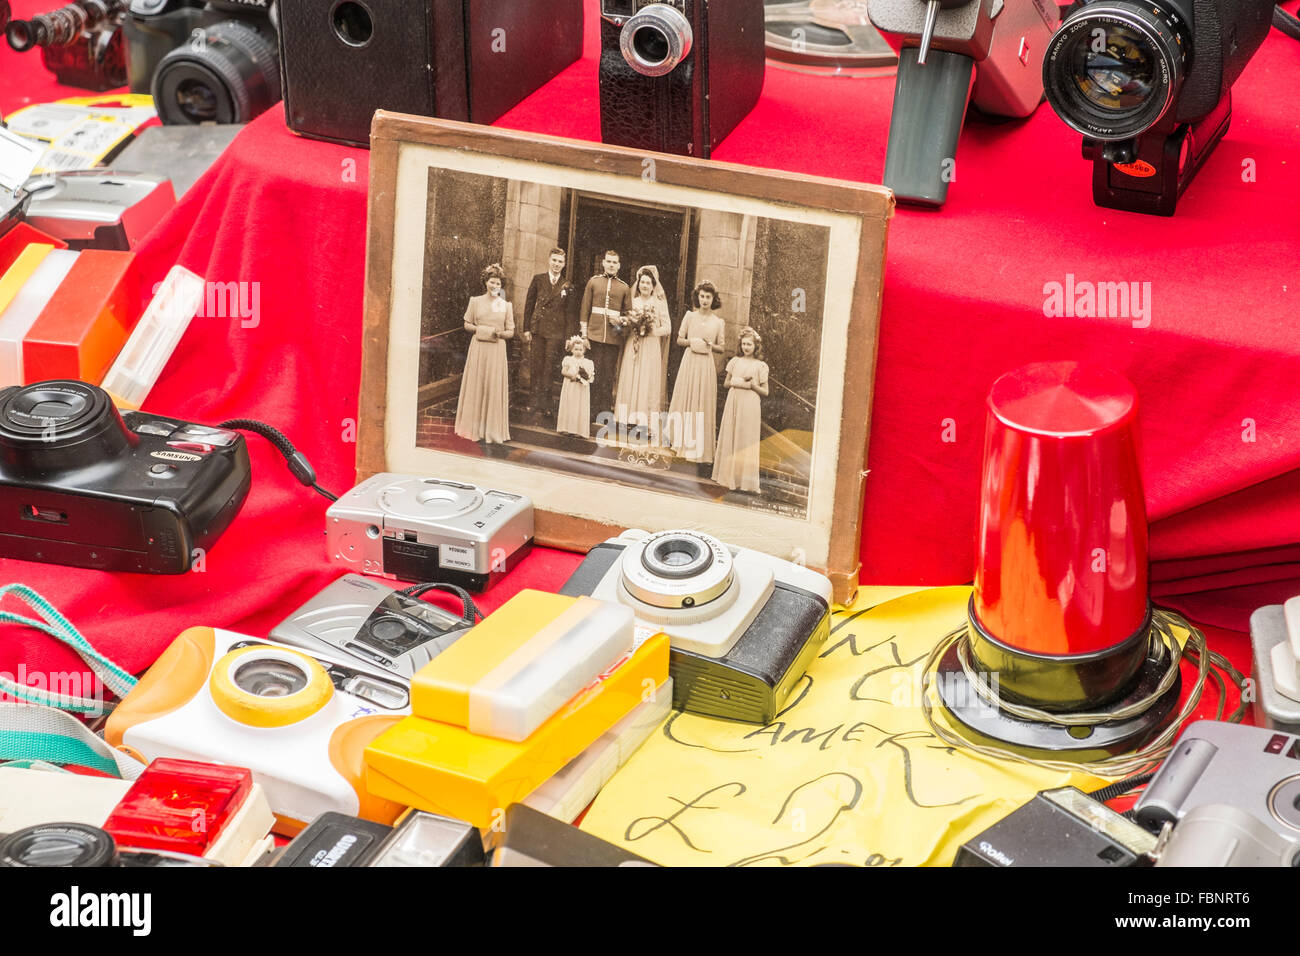 Les caméras et une vieille photo de mariage, décroche à Brick Lane Market, Tower Hamlets, East London, Angleterre Banque D'Images